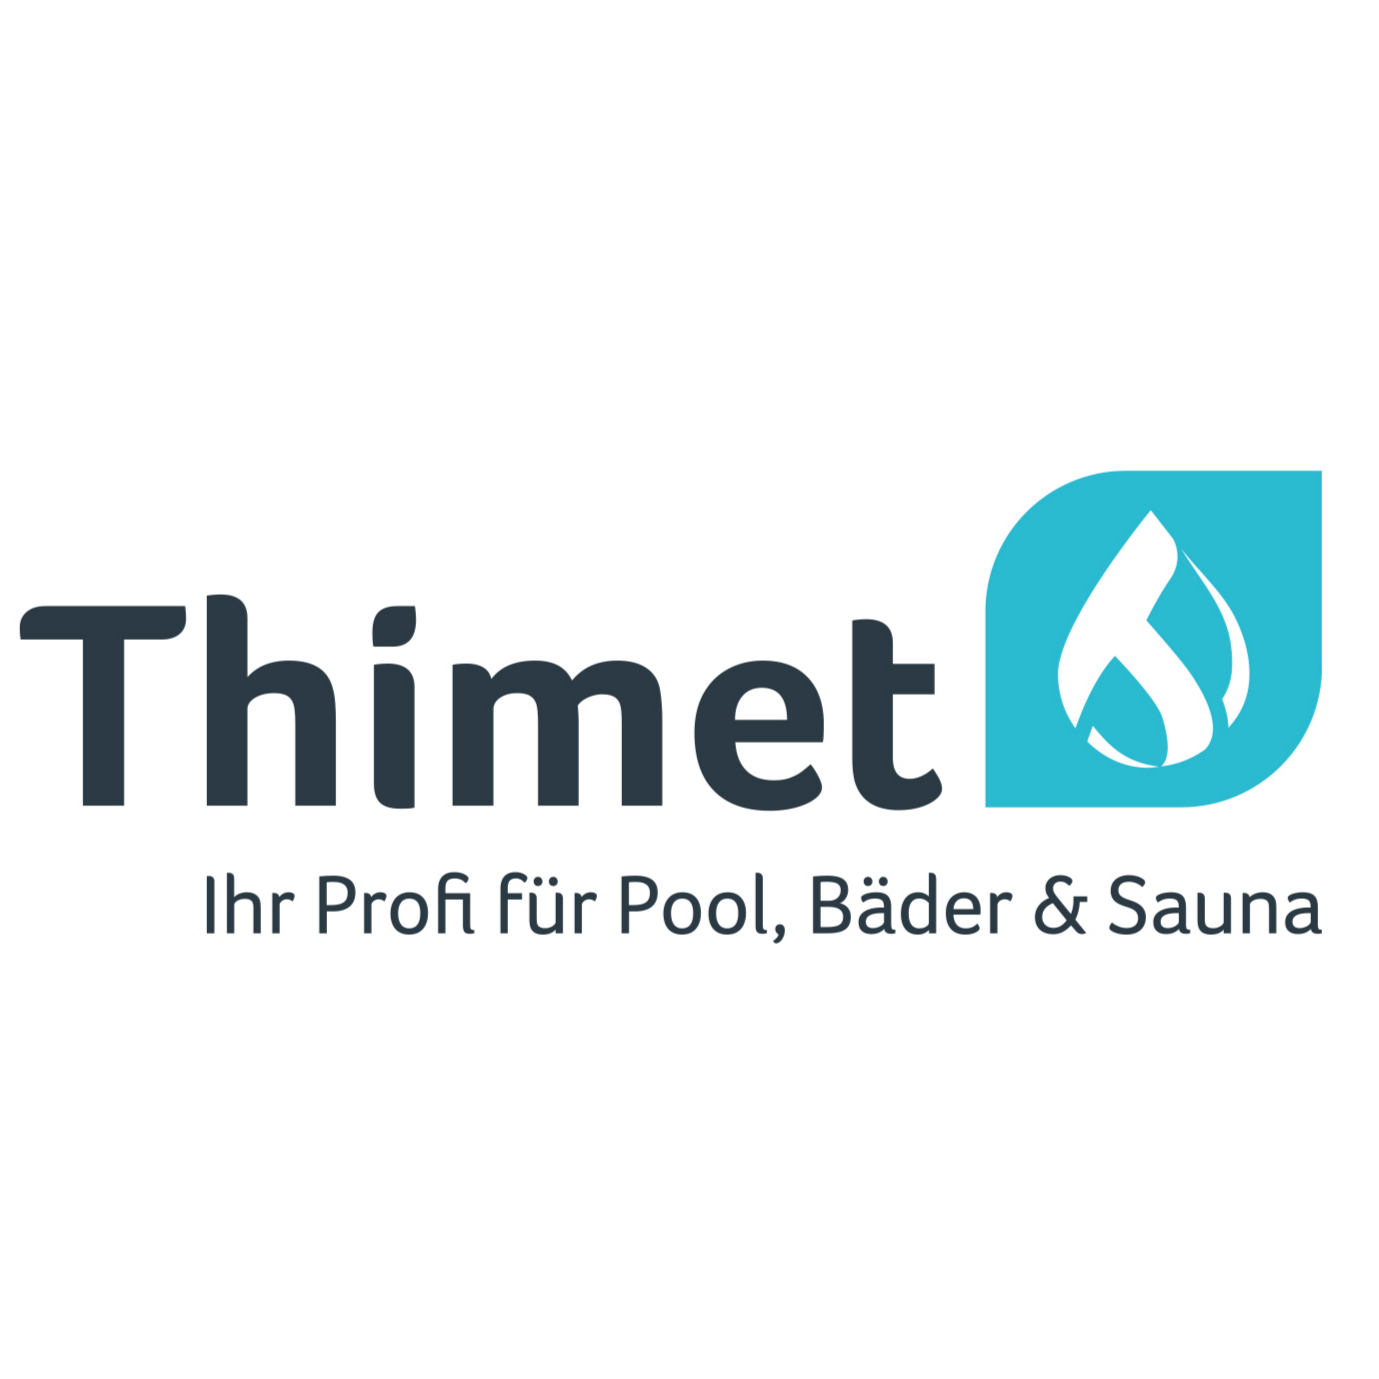 Bilder Thimet Bäderbetriebe GmbH Pool, Sauna & Spa